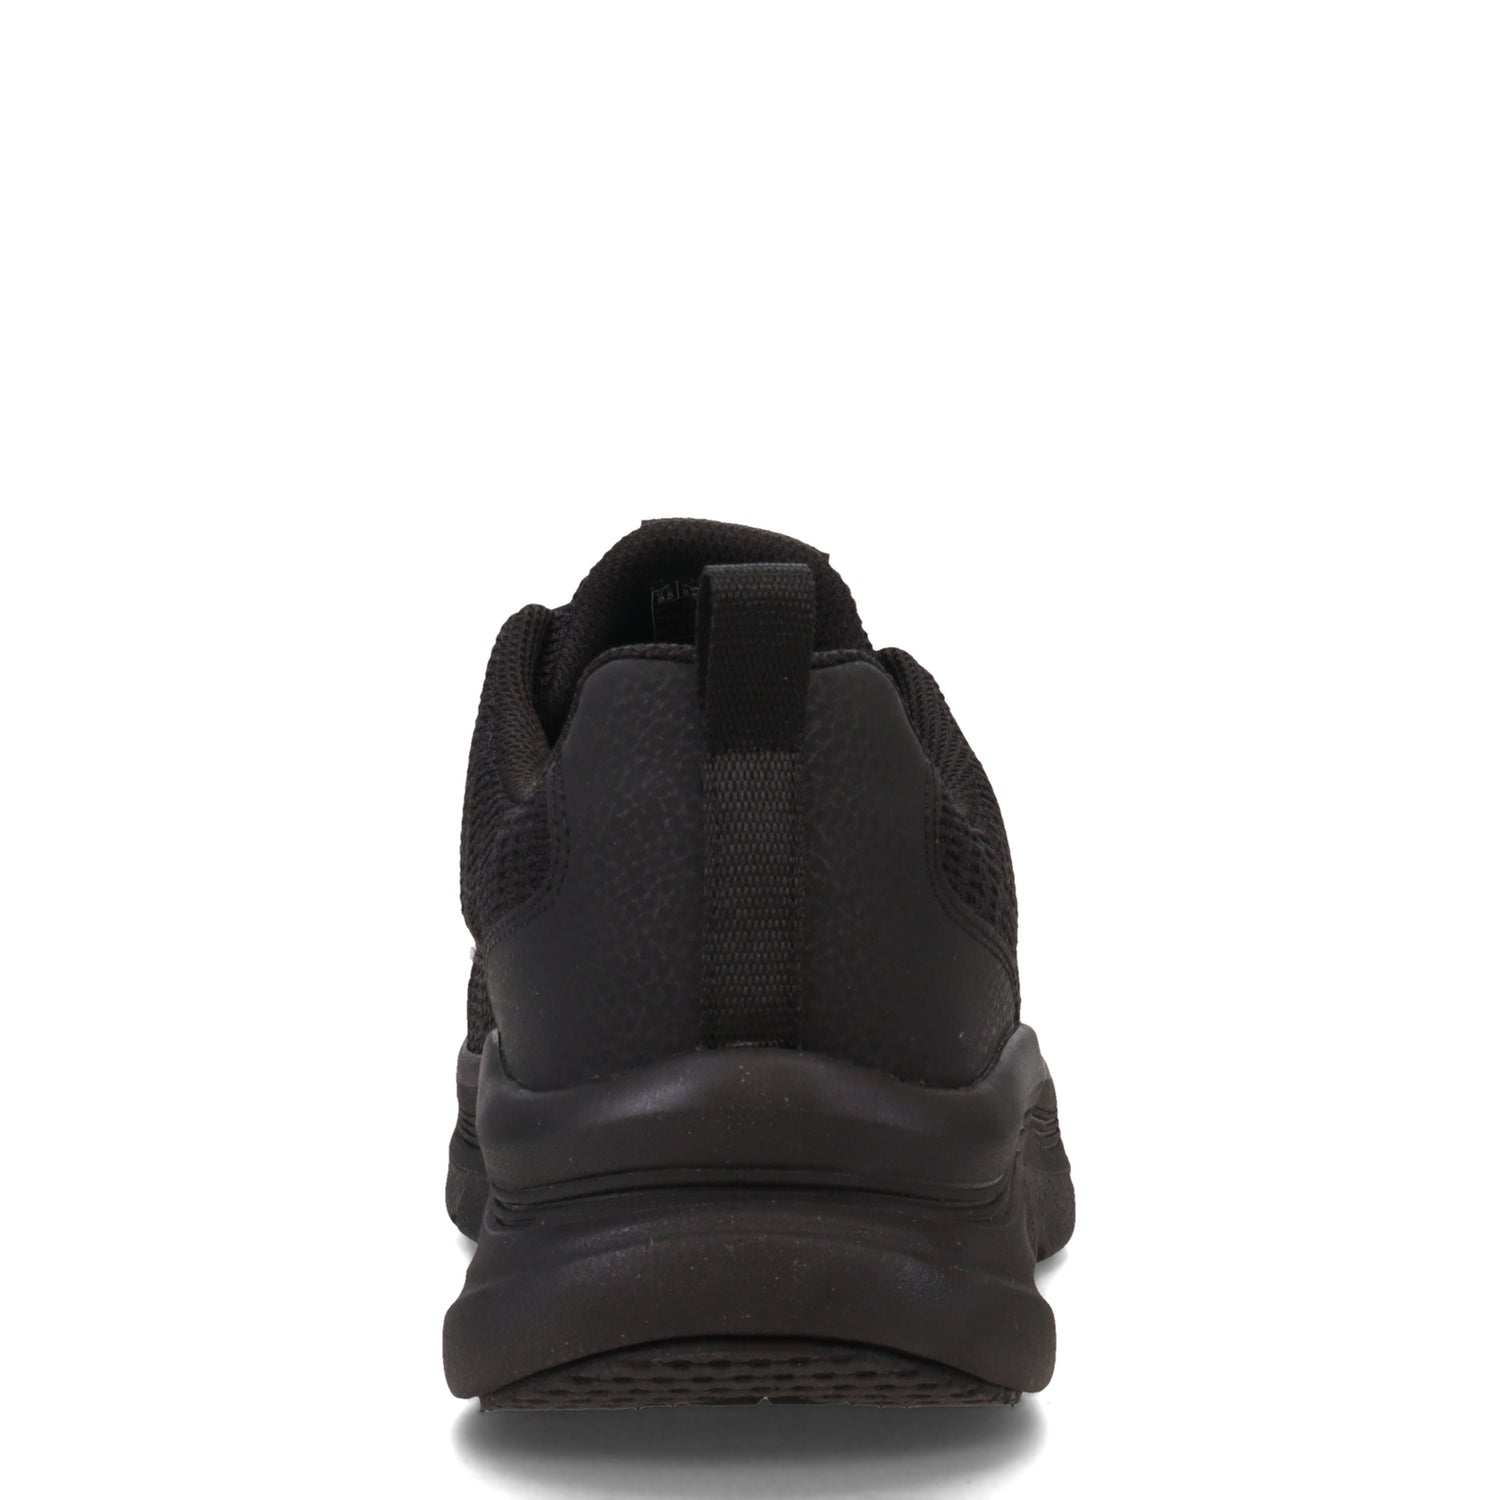 Peltz Shoes  Men's Skechers Relaxed Fit: D'Lux Walker - Pensive Sneaker BLACK/BLACK 232045-BBK